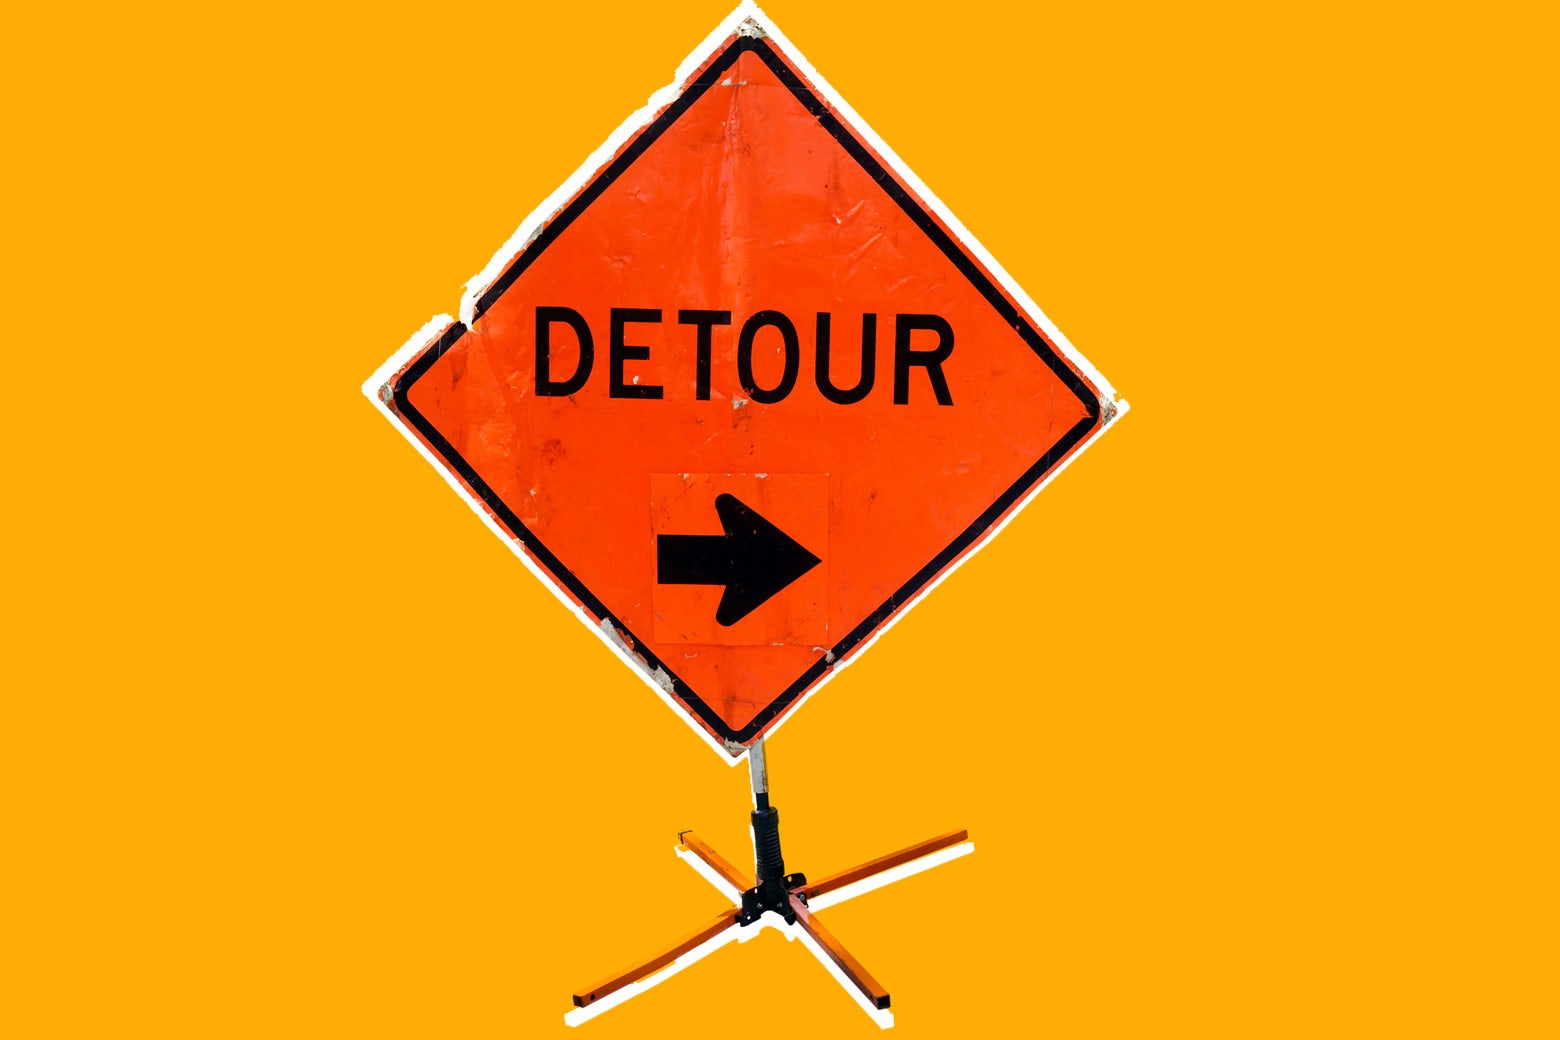 Detour sign.